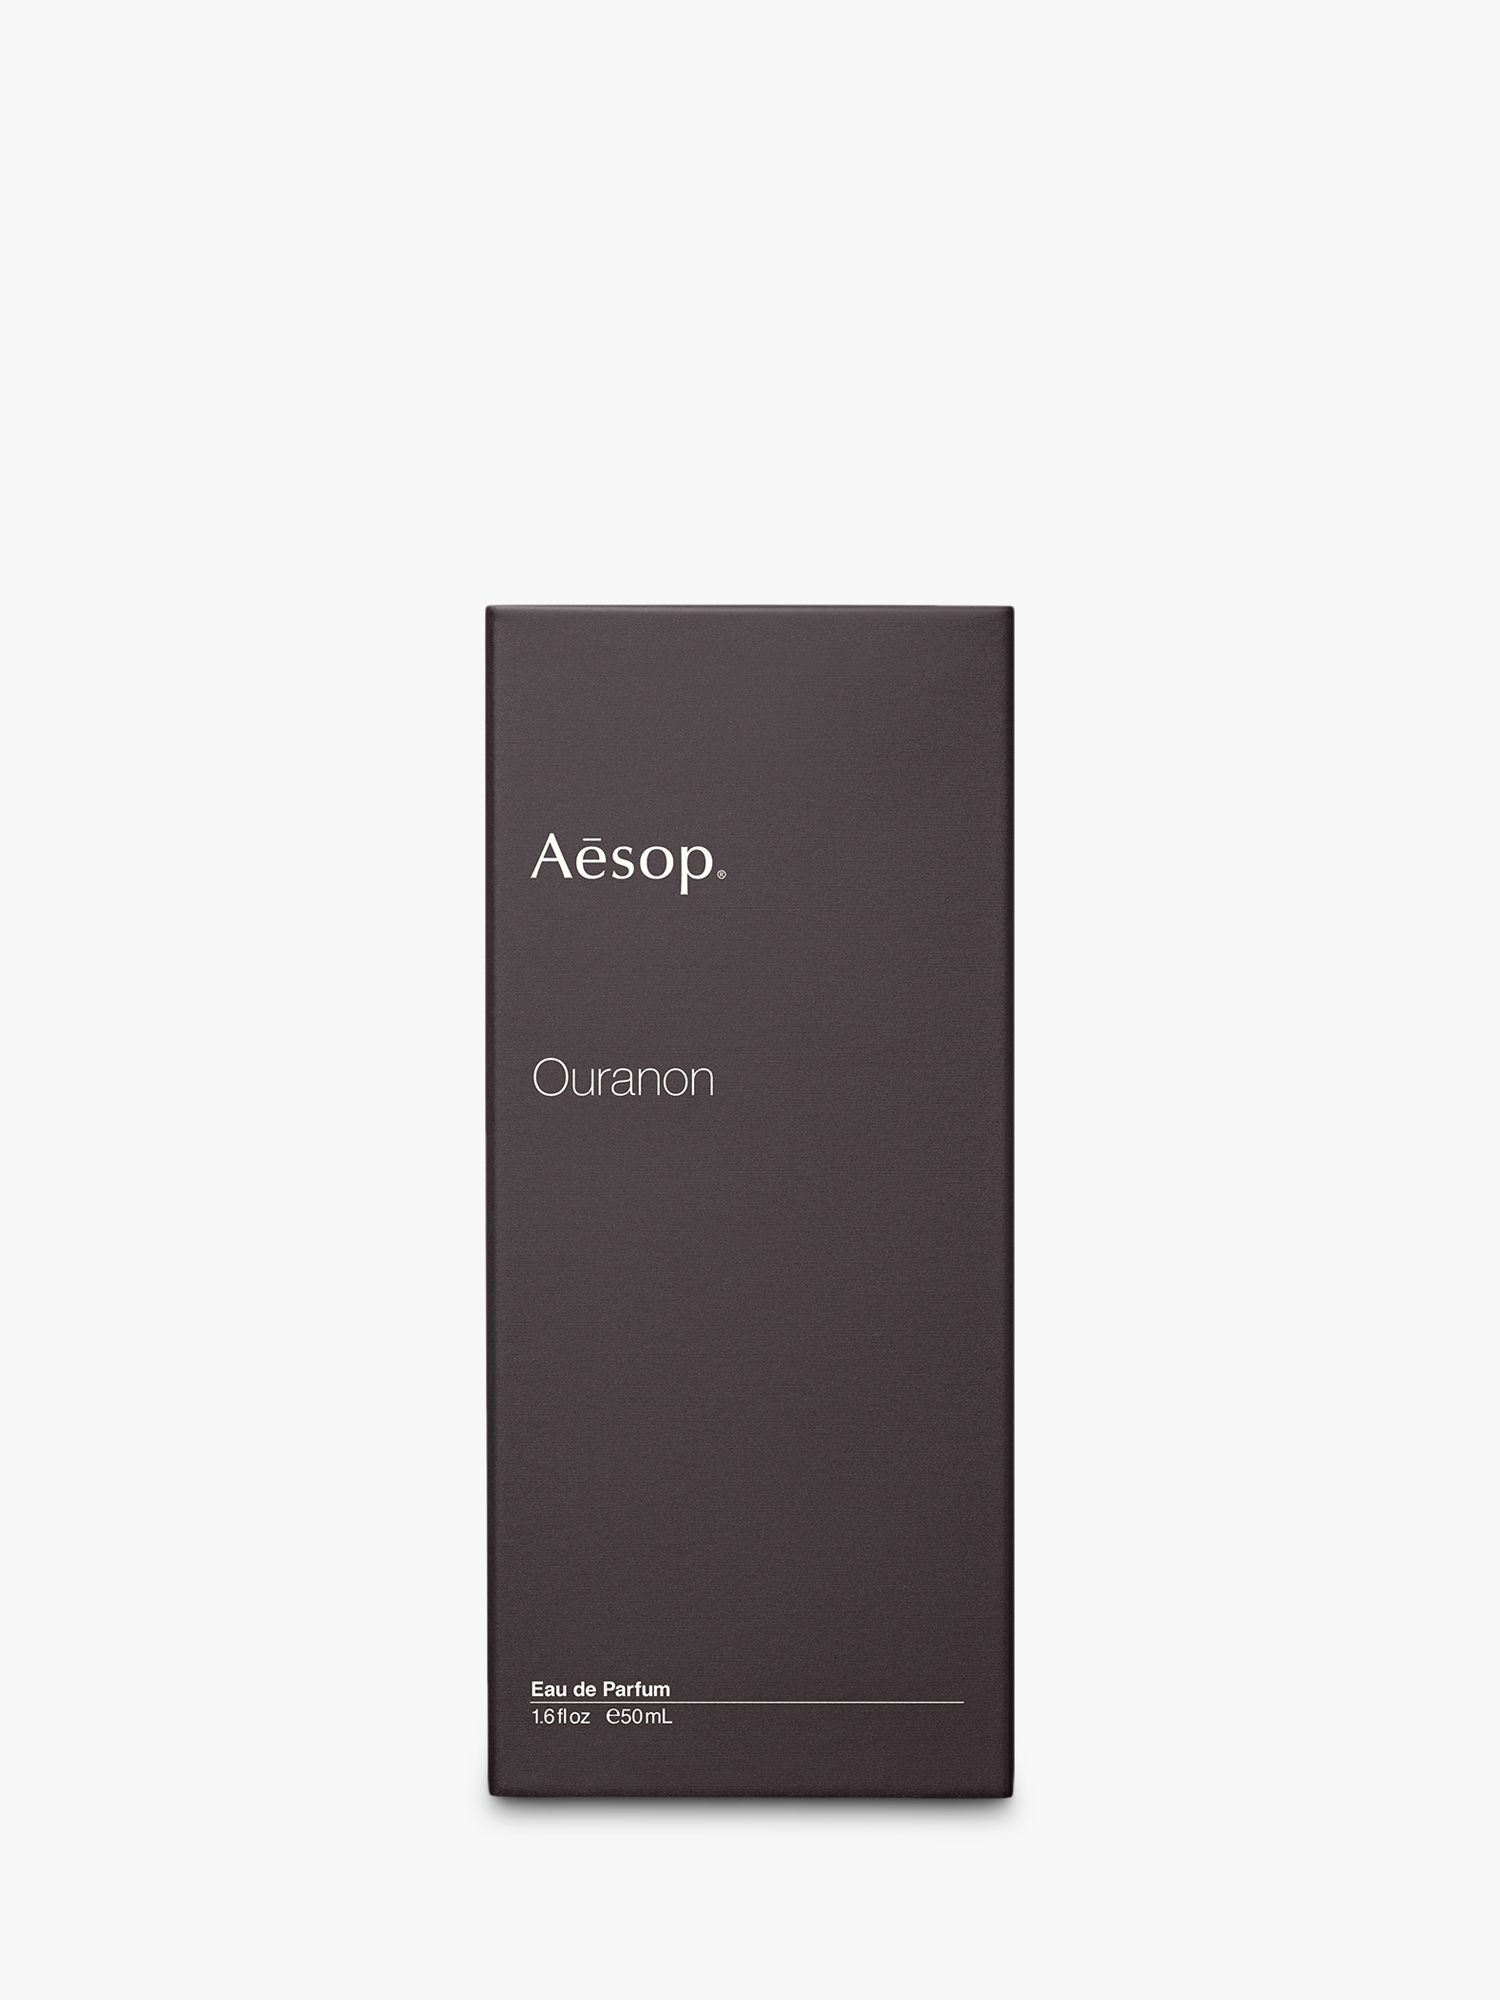 Aesop Ouranon Eau de Parfum, 50ml